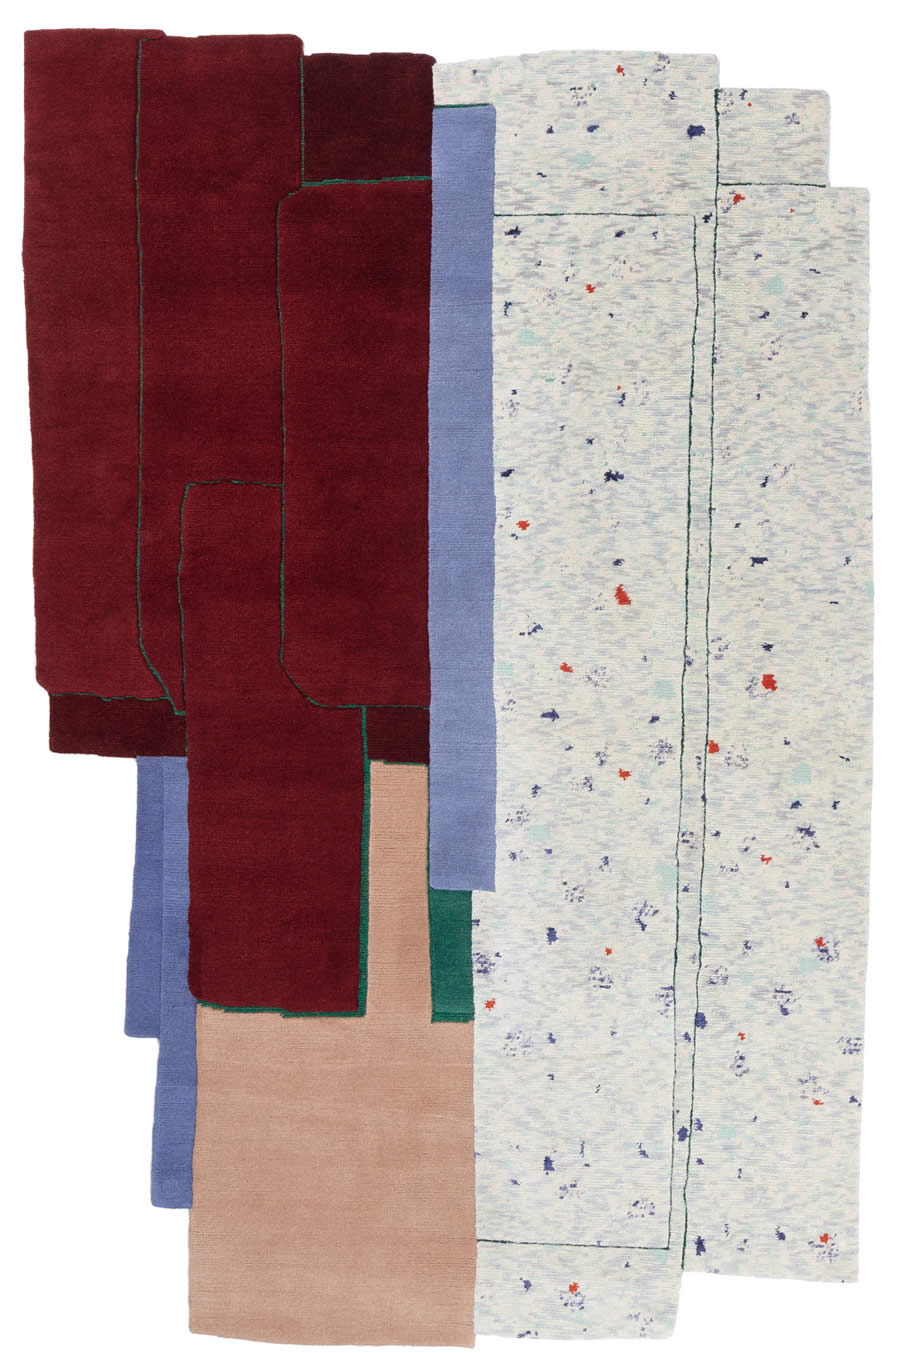 现代简约红蓝碎片异形图案地毯贴图